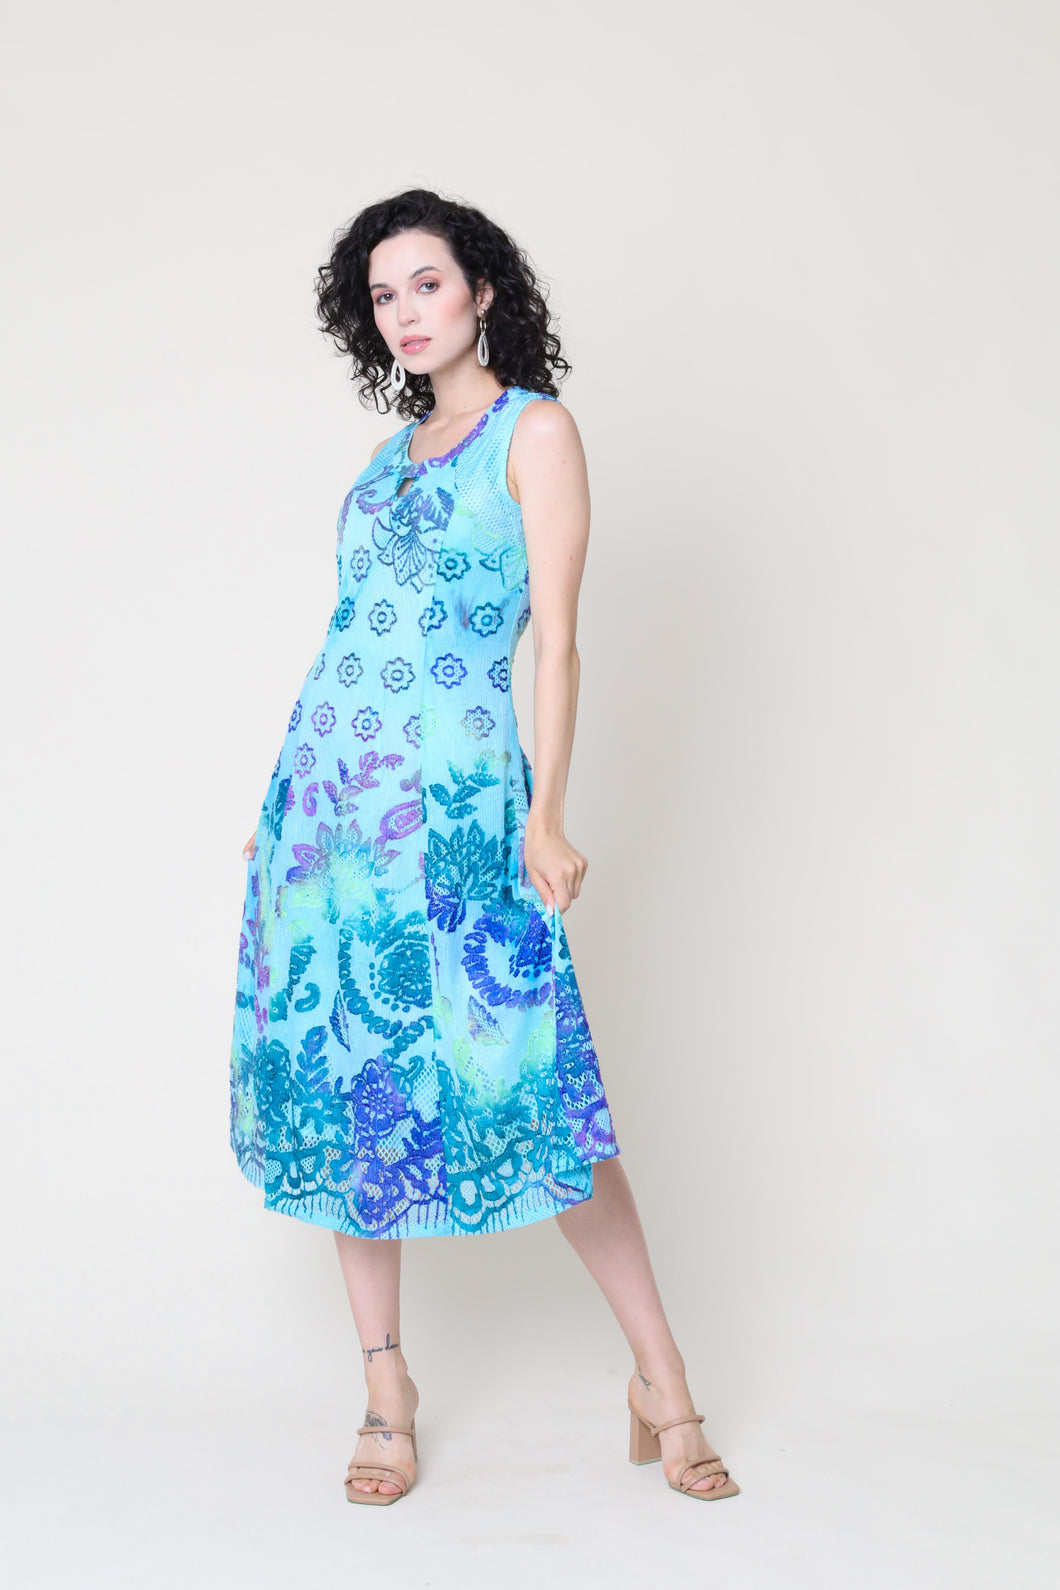 Cativa Moana Round Neck Sleeveless Aqua Breeze Print Dress